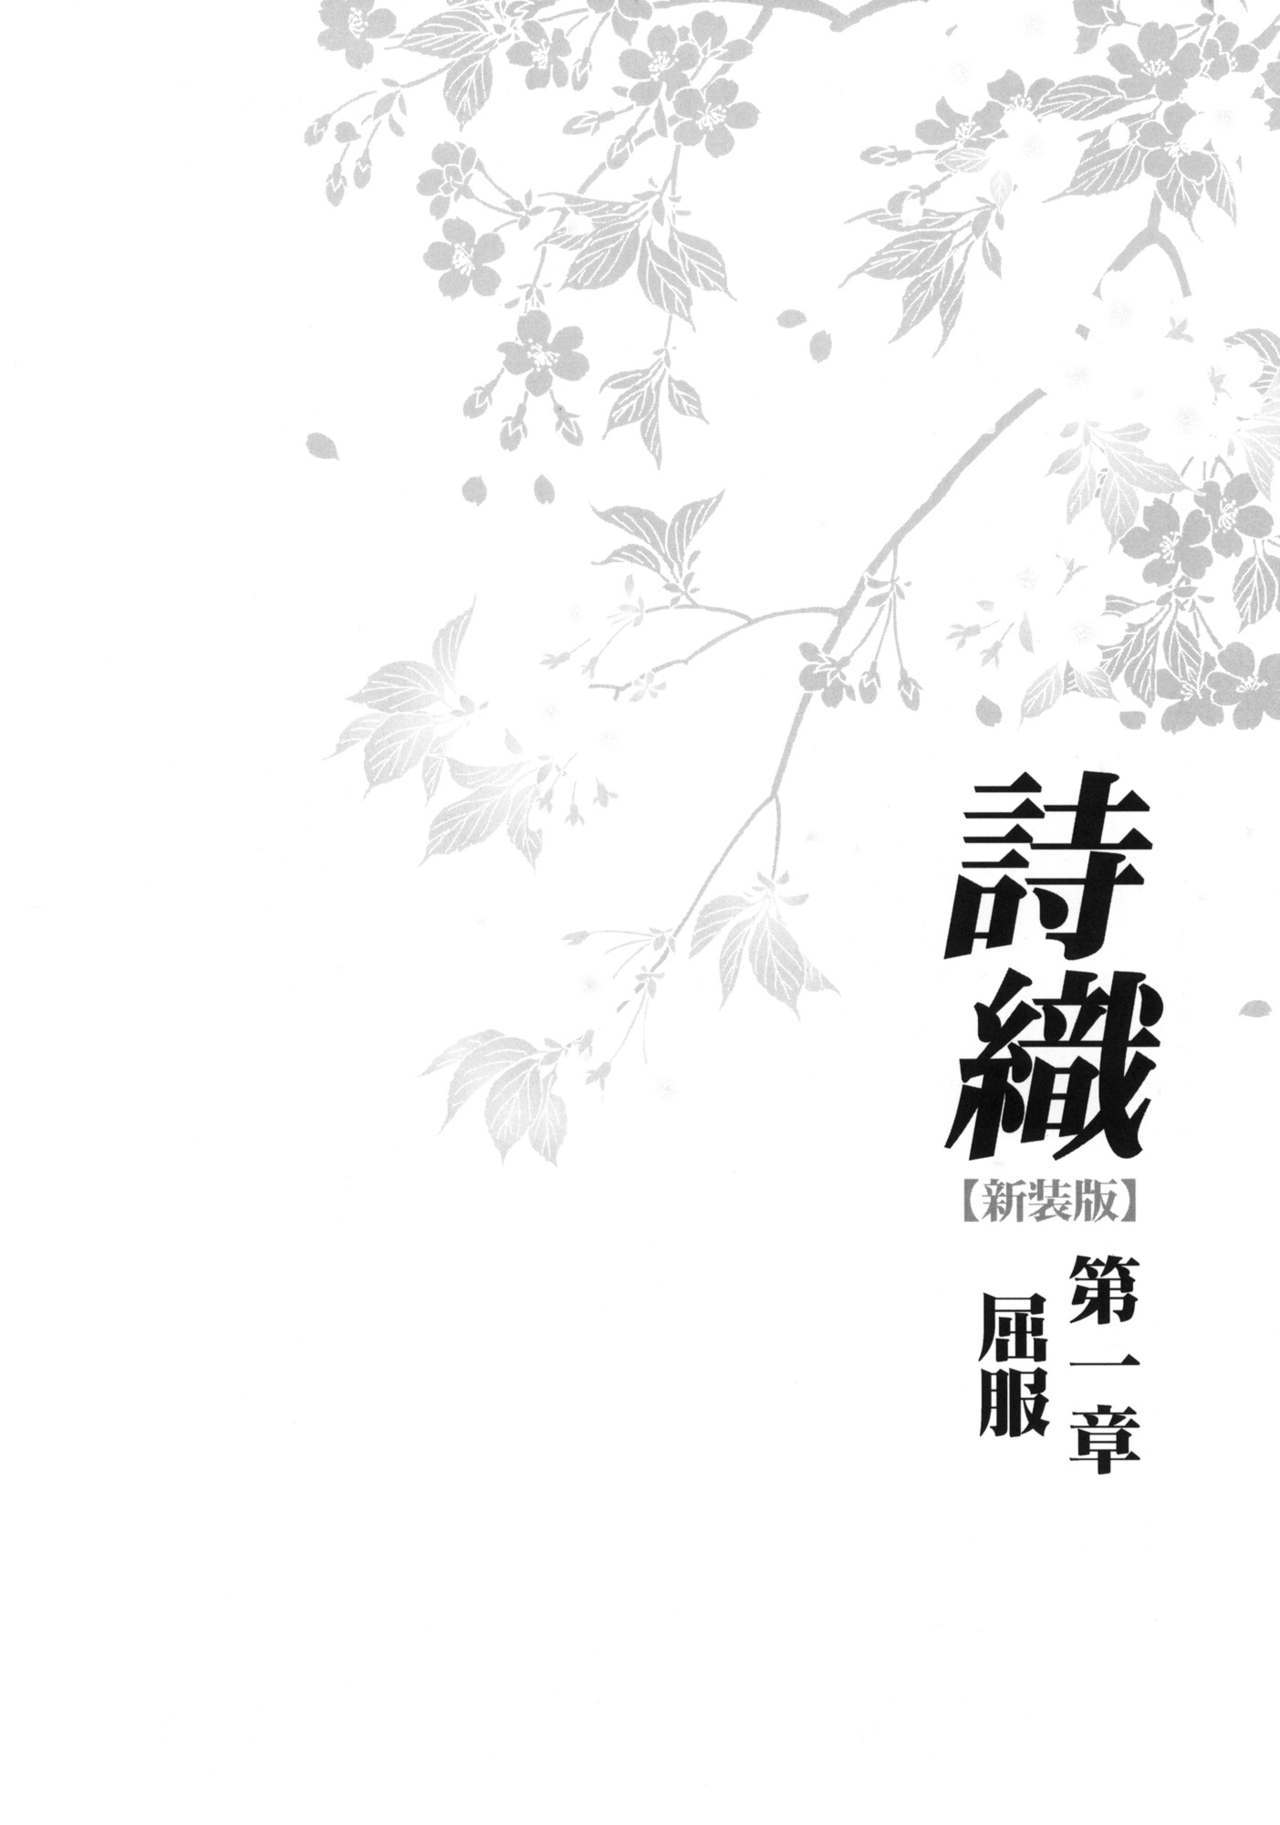 詩織Vol.1九福-新装版{doujins.com}